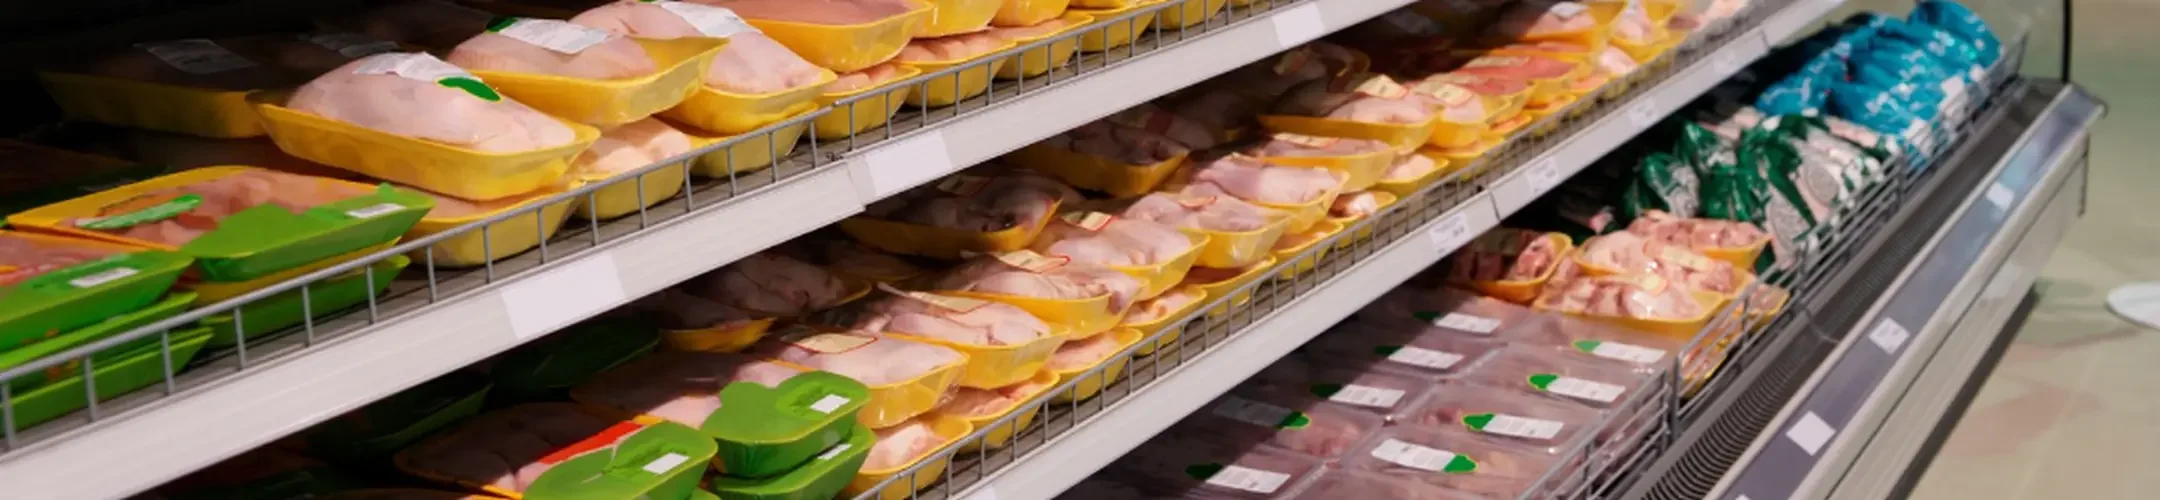 Kühlregal mit verpackten Fleischprodukten